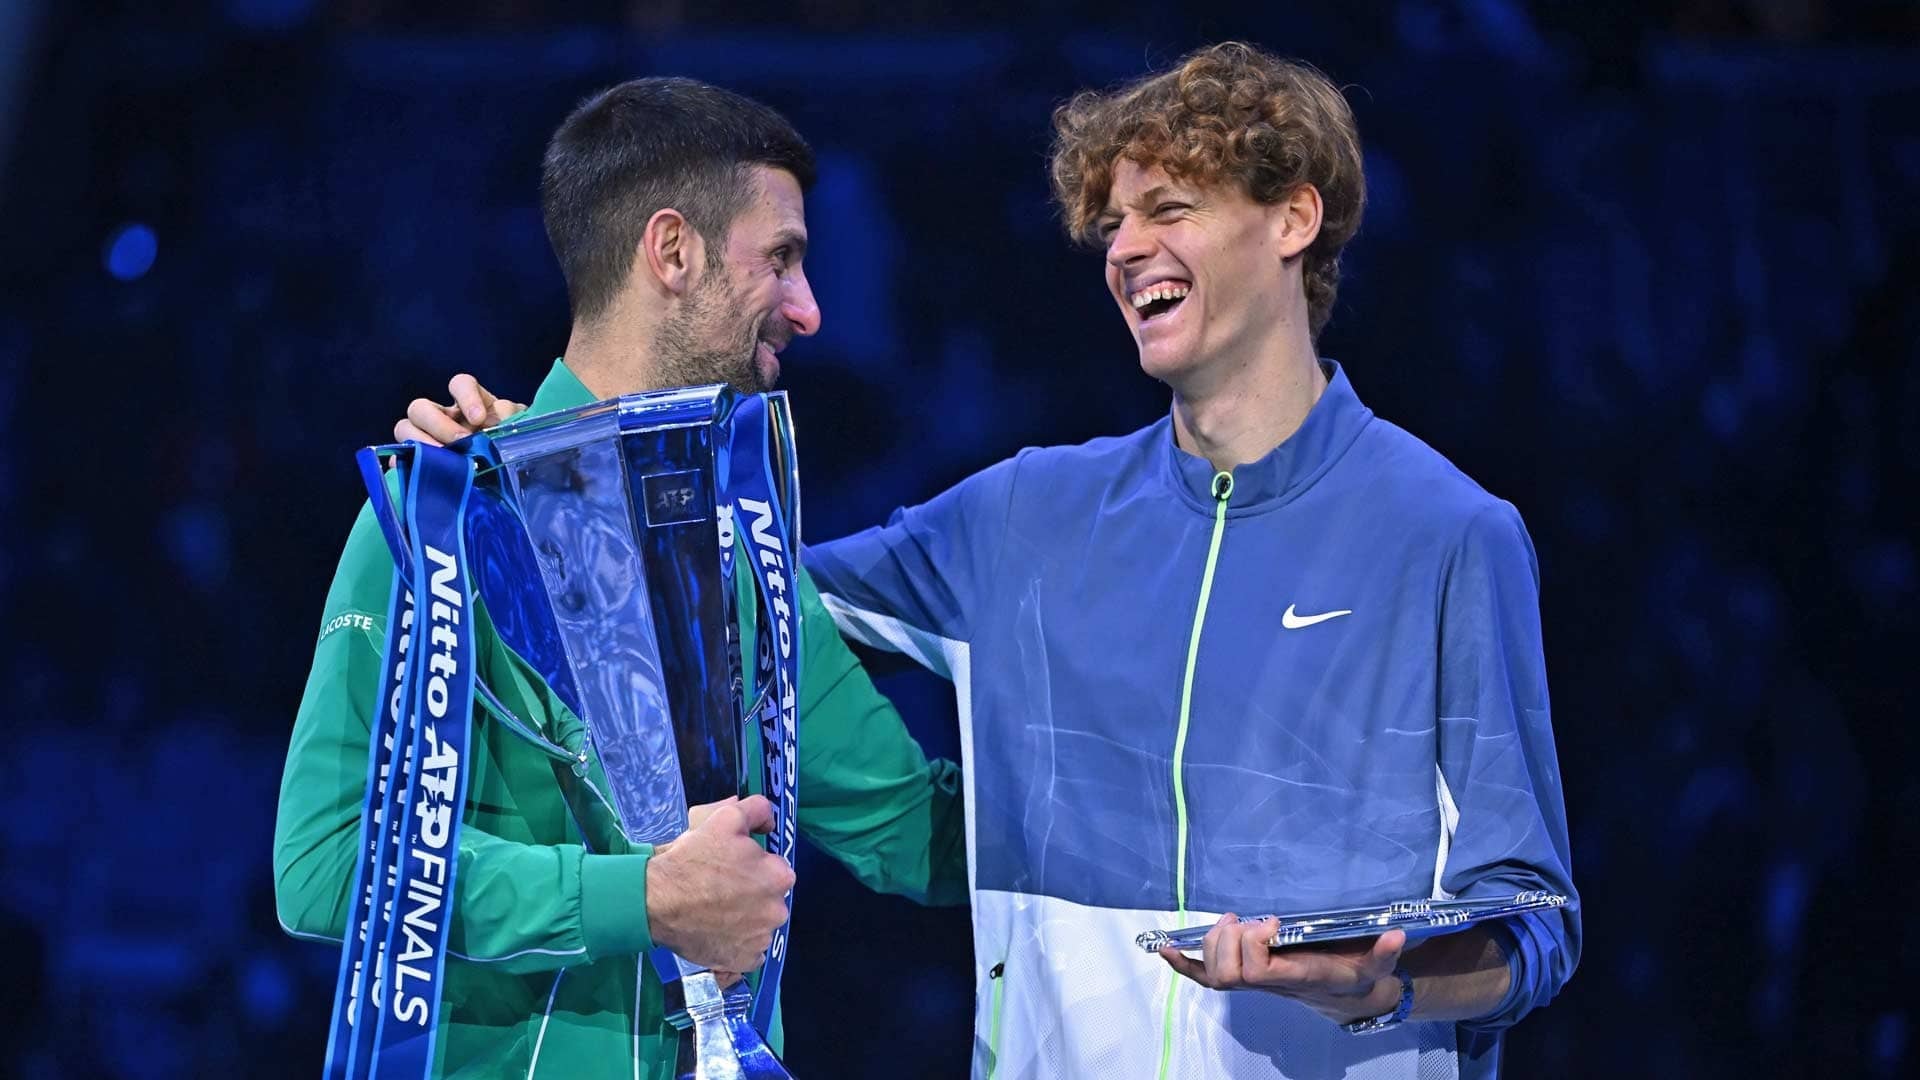 Chuyên gia: "Sinner sẽ vào chung kết Roland Garros, Djokovic khó tiến xa"